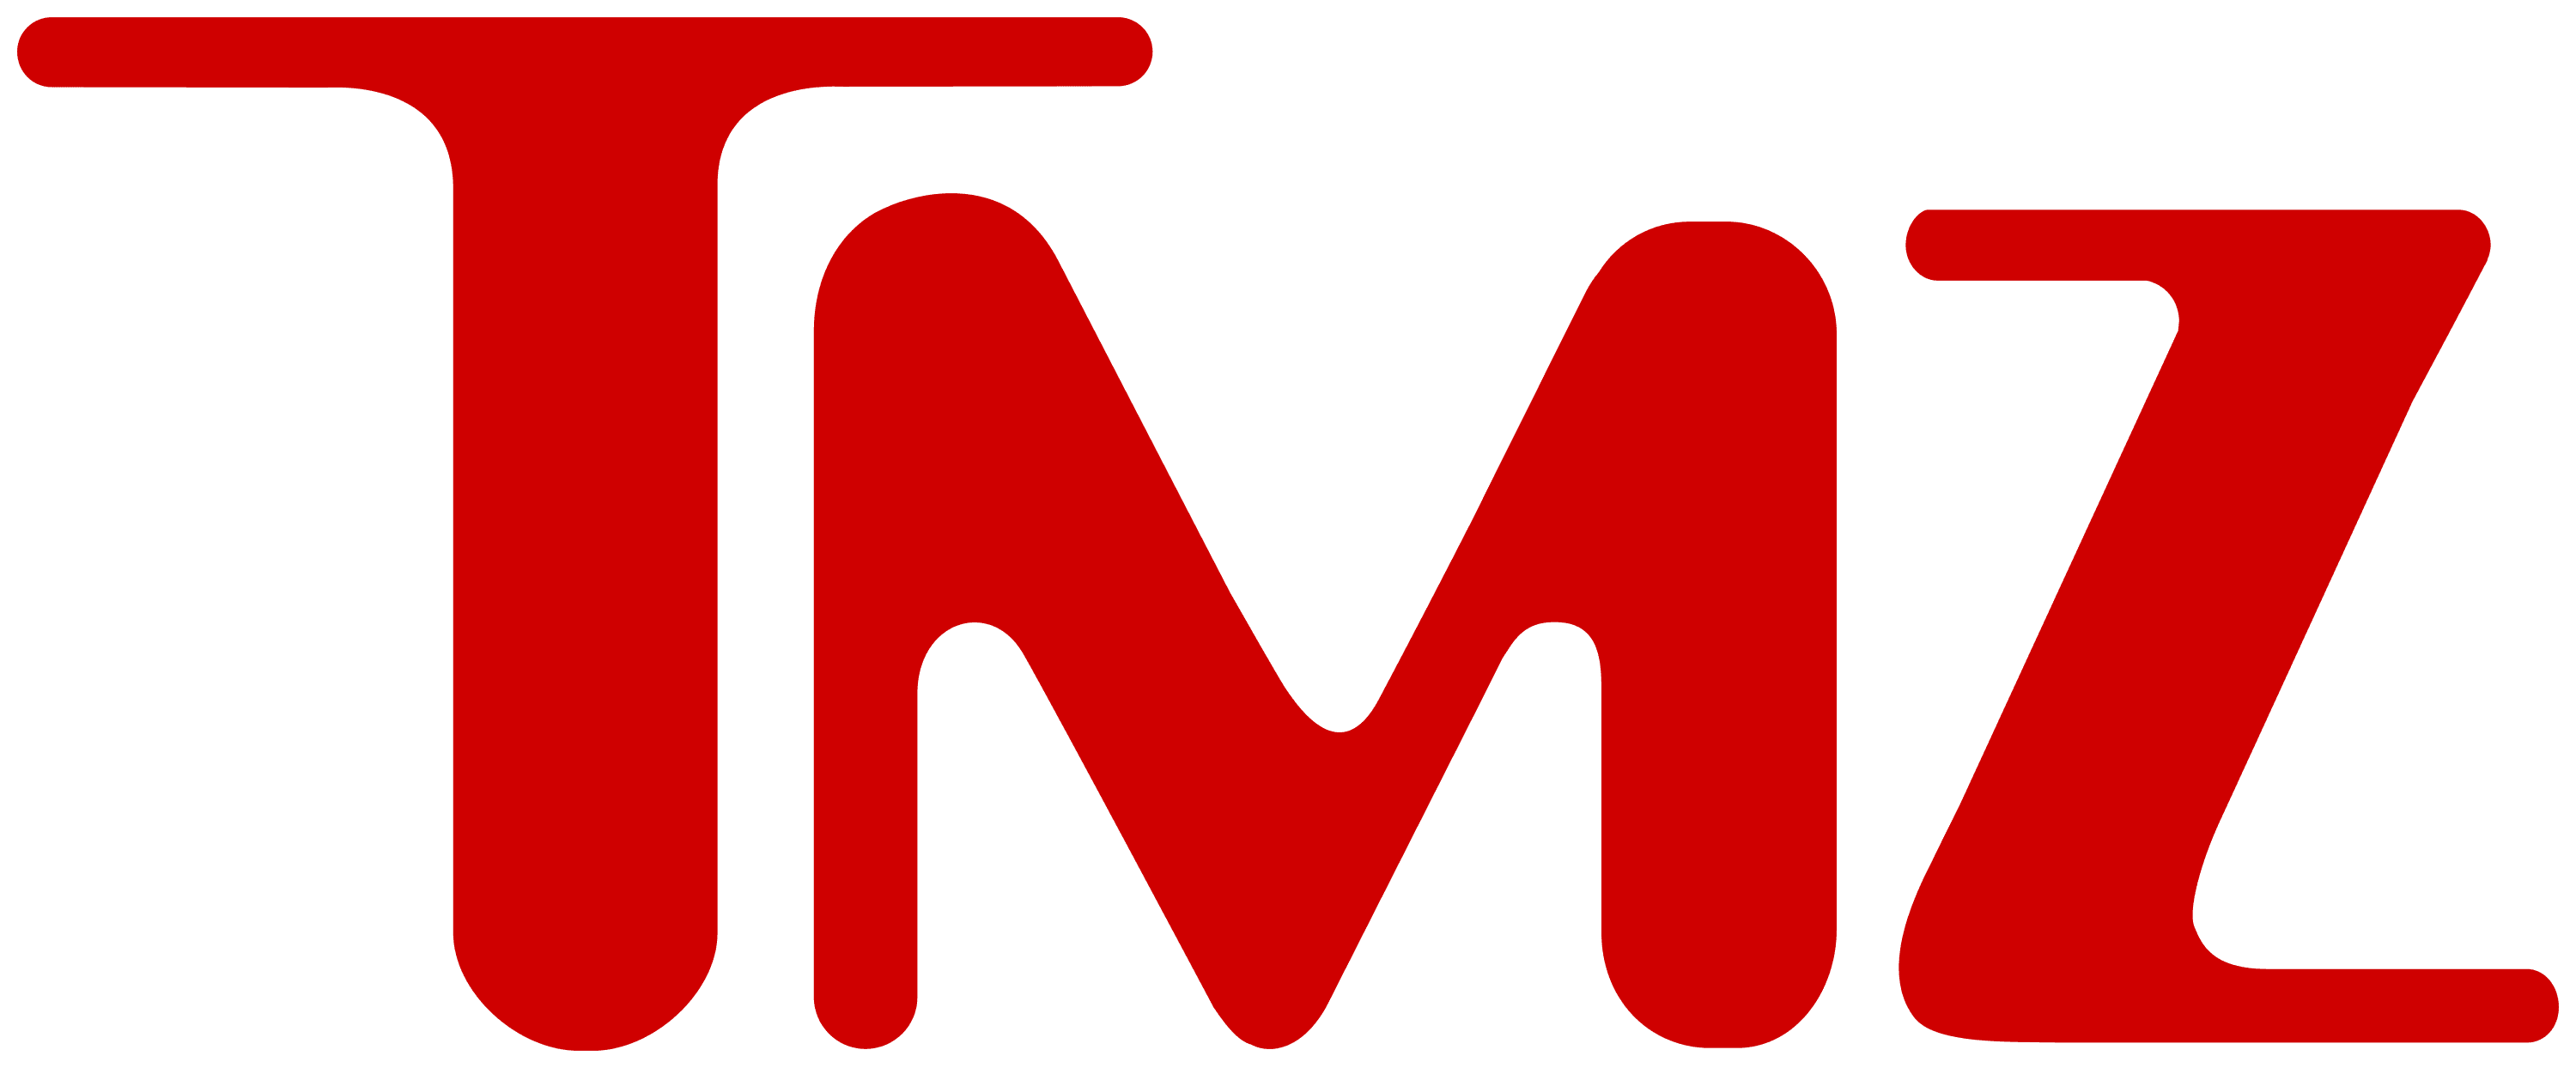 TMZ_logo